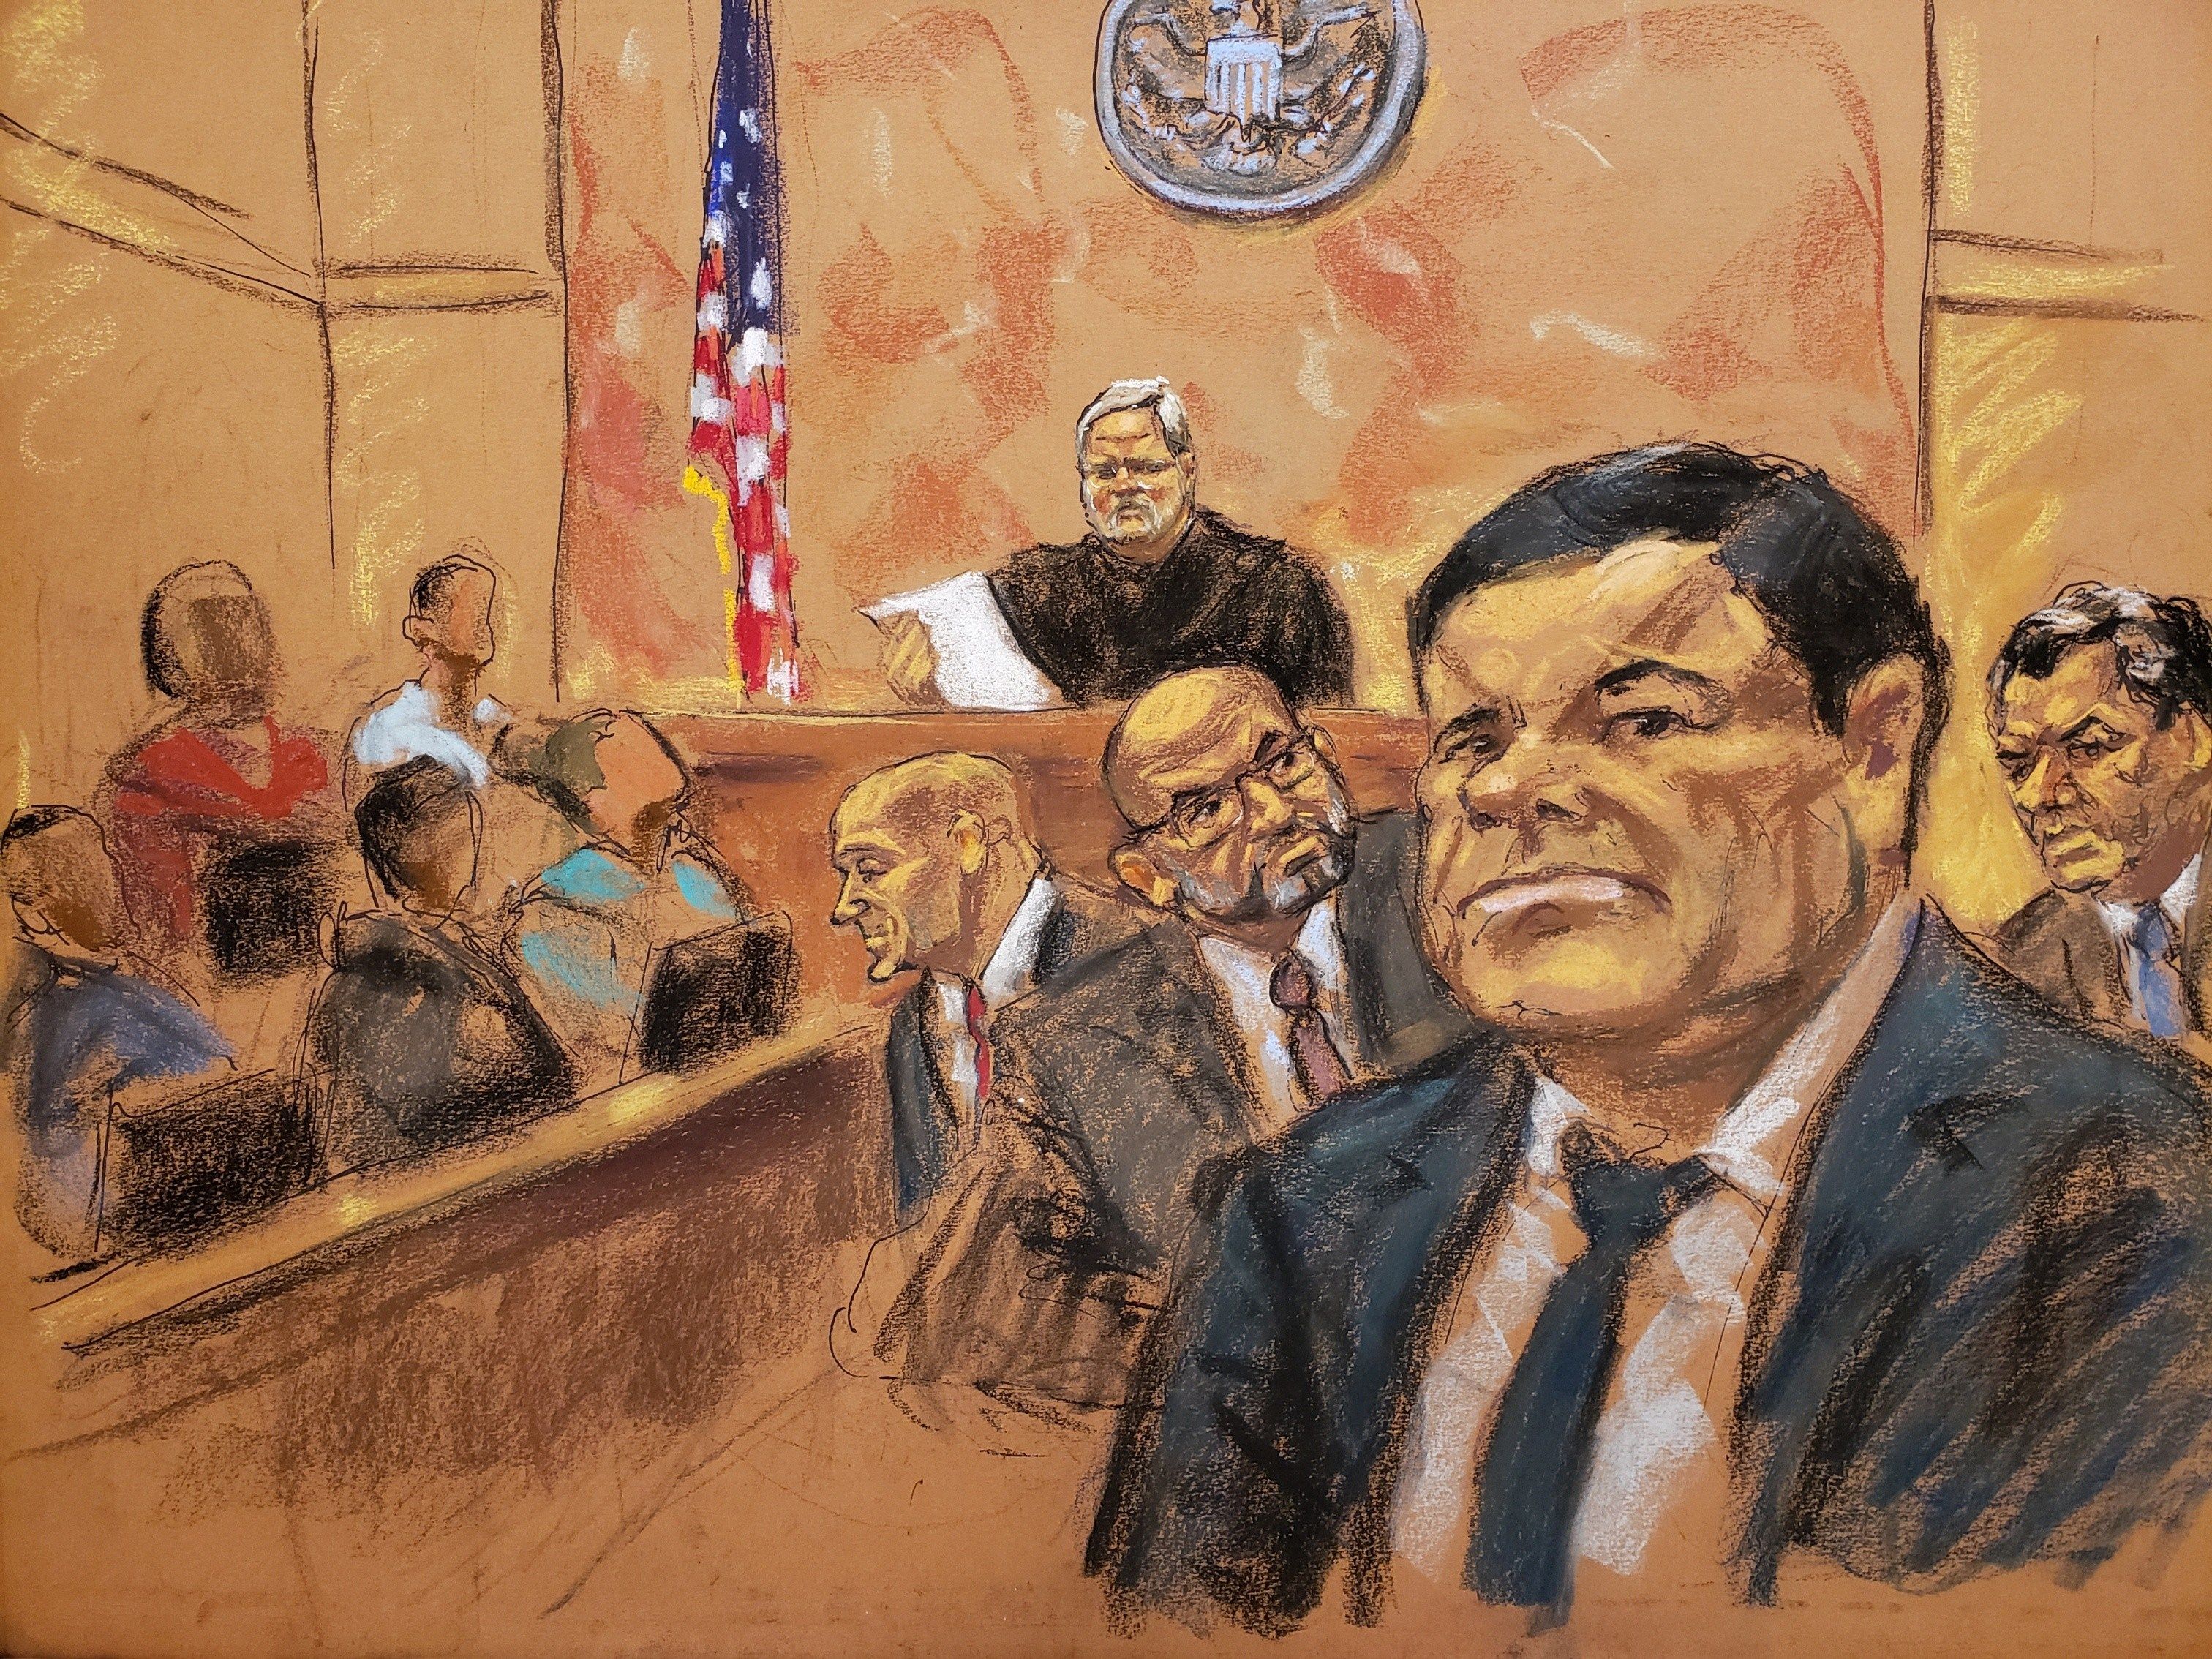 Tribunal escuchó argumentos de la defensa de “El Chapo” Guzmán, quien ansía la libertad